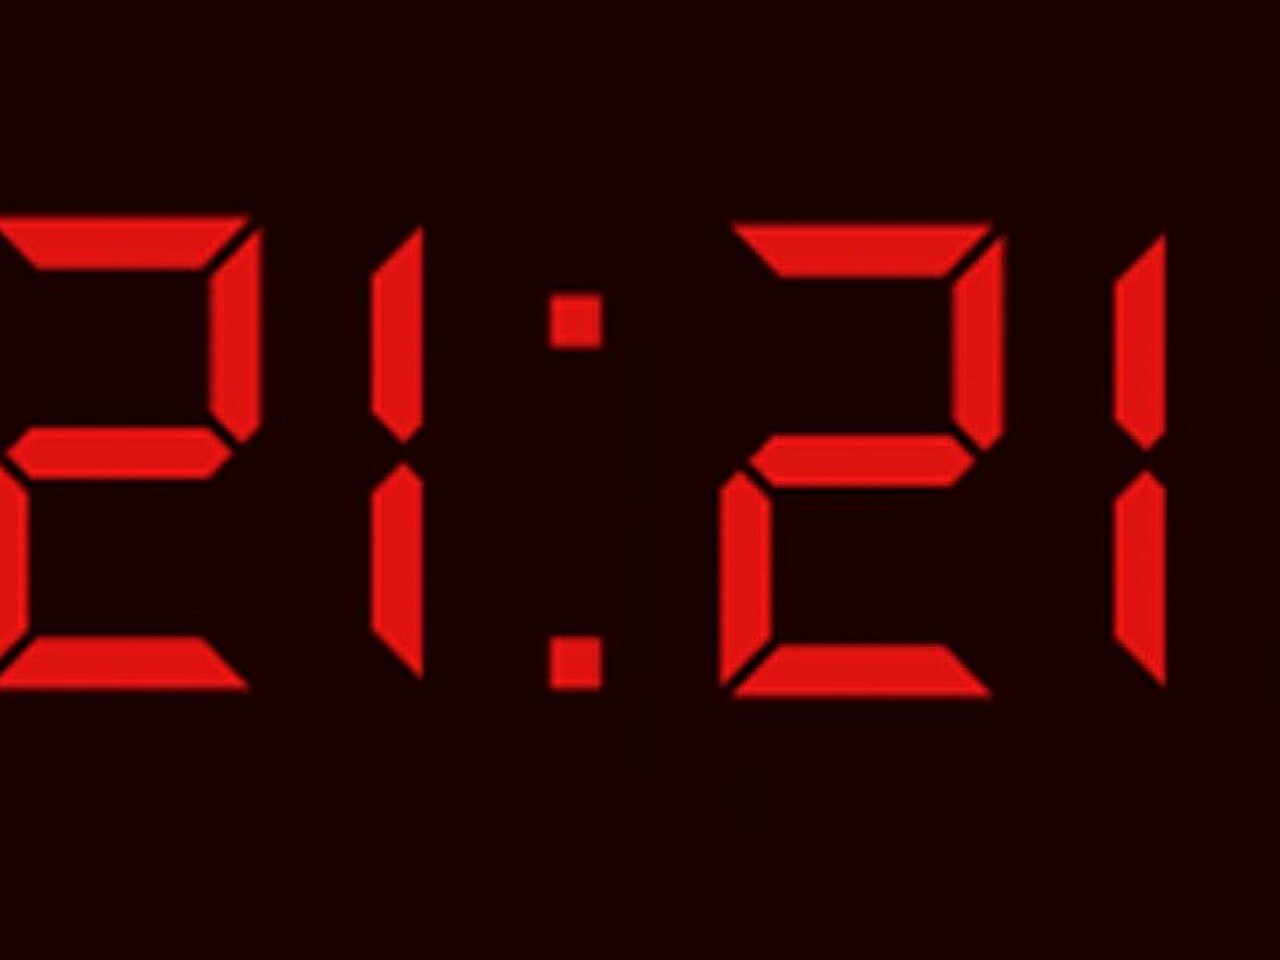 5 22 22 43. Цифры на электронных часах. 11 11 Электронные часы. Первые цифровые часы. Часы повторяющиеся цифры на часах.